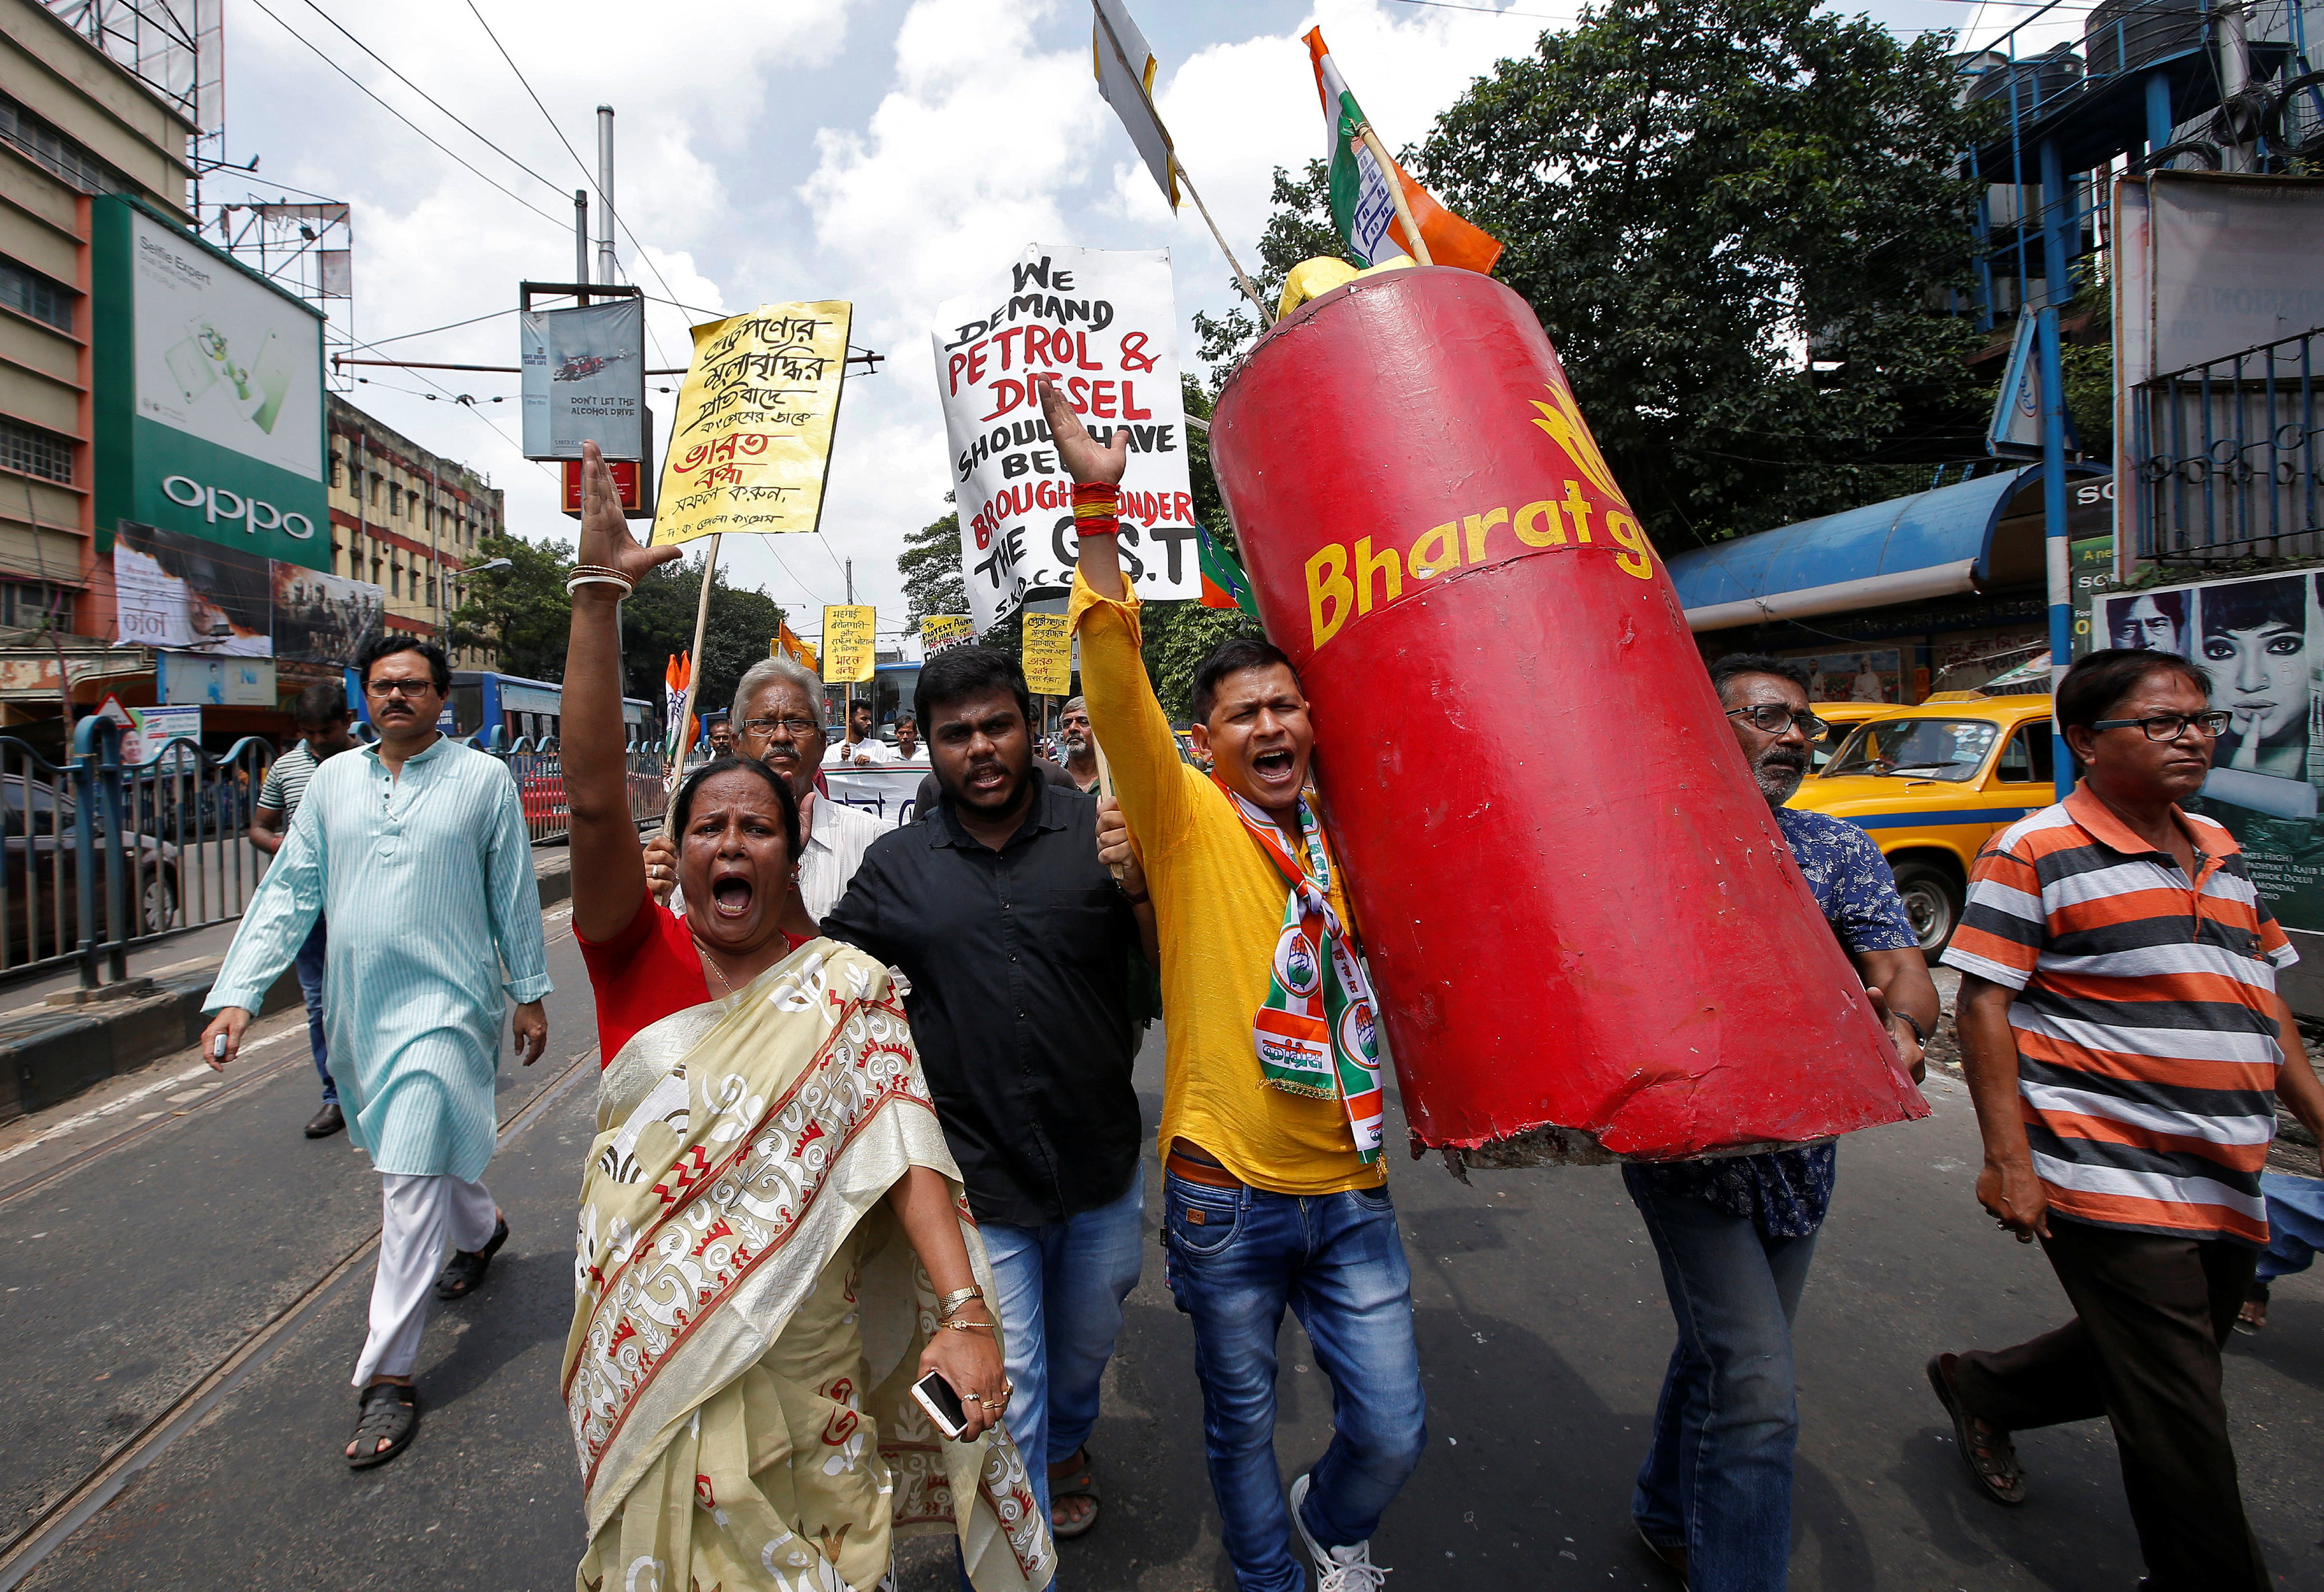 المعارضين فى الهند يهتفون بشعارات مناهضة للحكومة وهم يحملون نموذجا لأسطوانة غاز البترول المسال